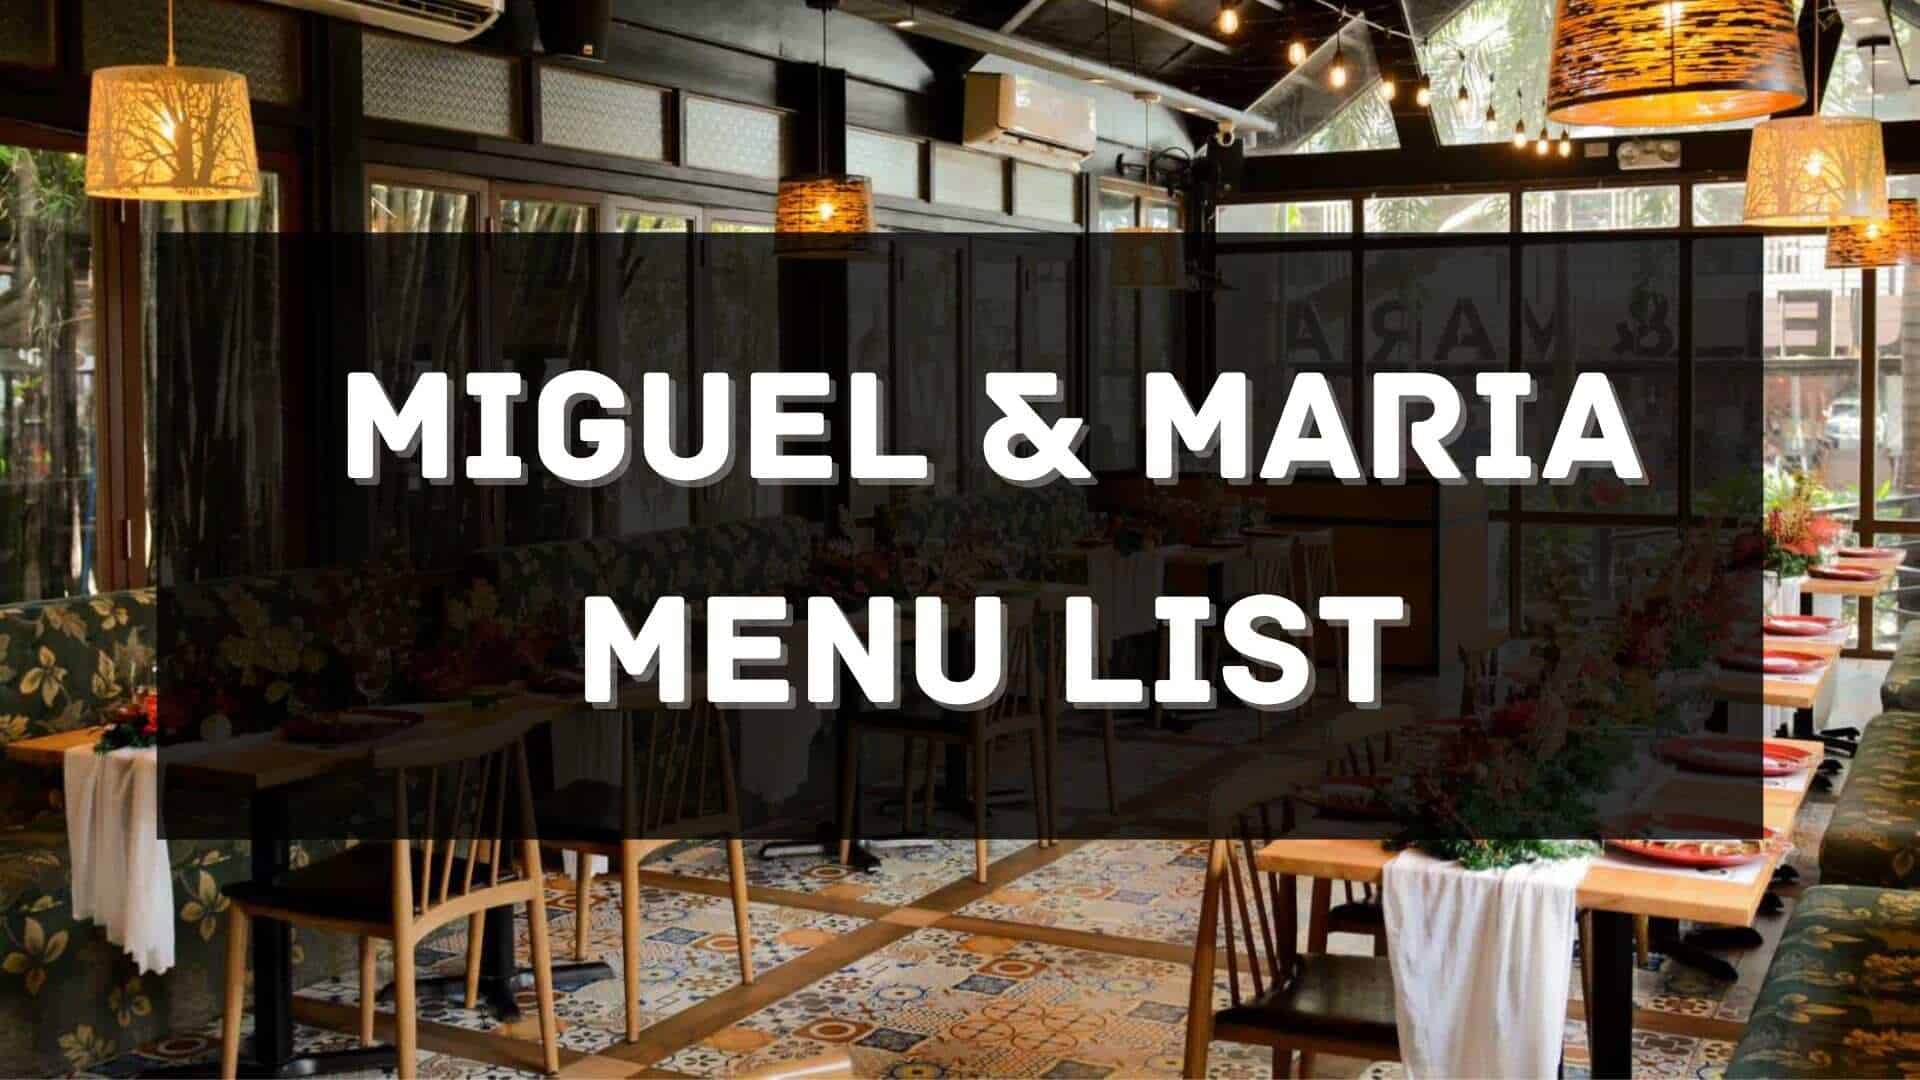 miguel & maria menu prices philippines